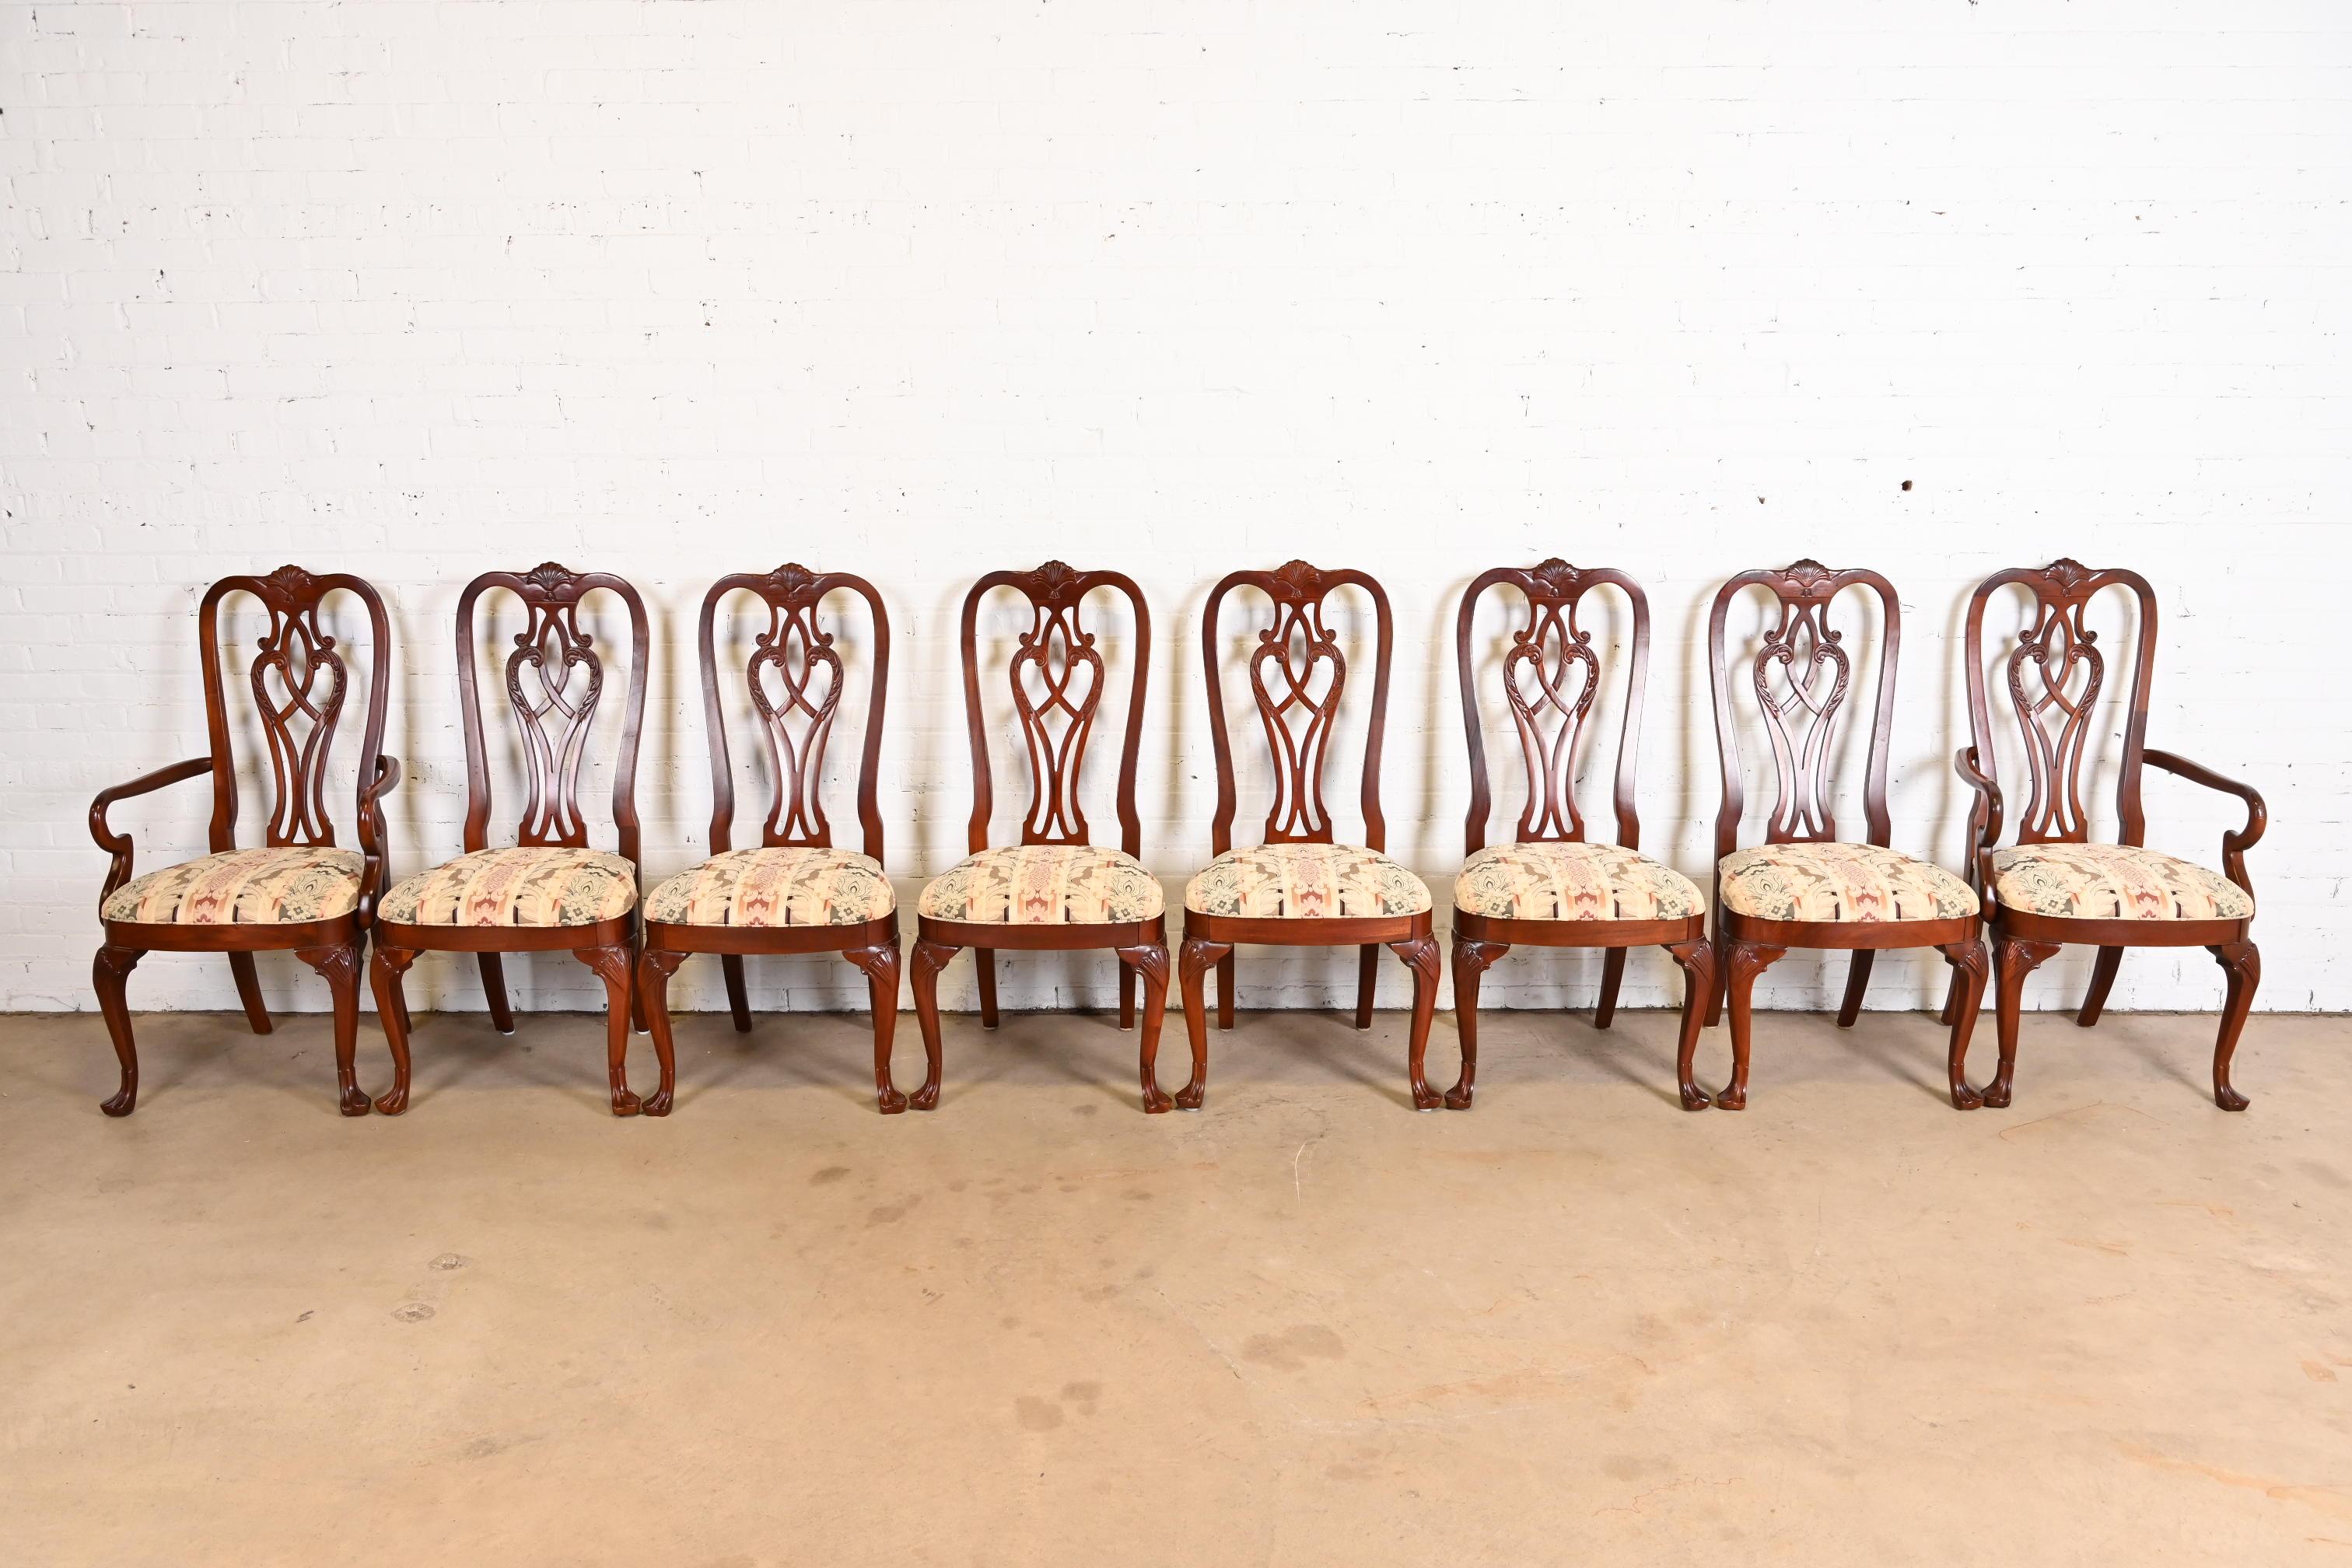 Ein prächtiger Satz von acht Esszimmerstühlen im georgianischen oder Chippendale-Stil

USA, ca. 1980er Jahre

Geschnitzte Rahmen aus massivem Mahagoni, mit Damast gepolsterte Sitze.

Maßnahmen:
Beistellstühle - 22 